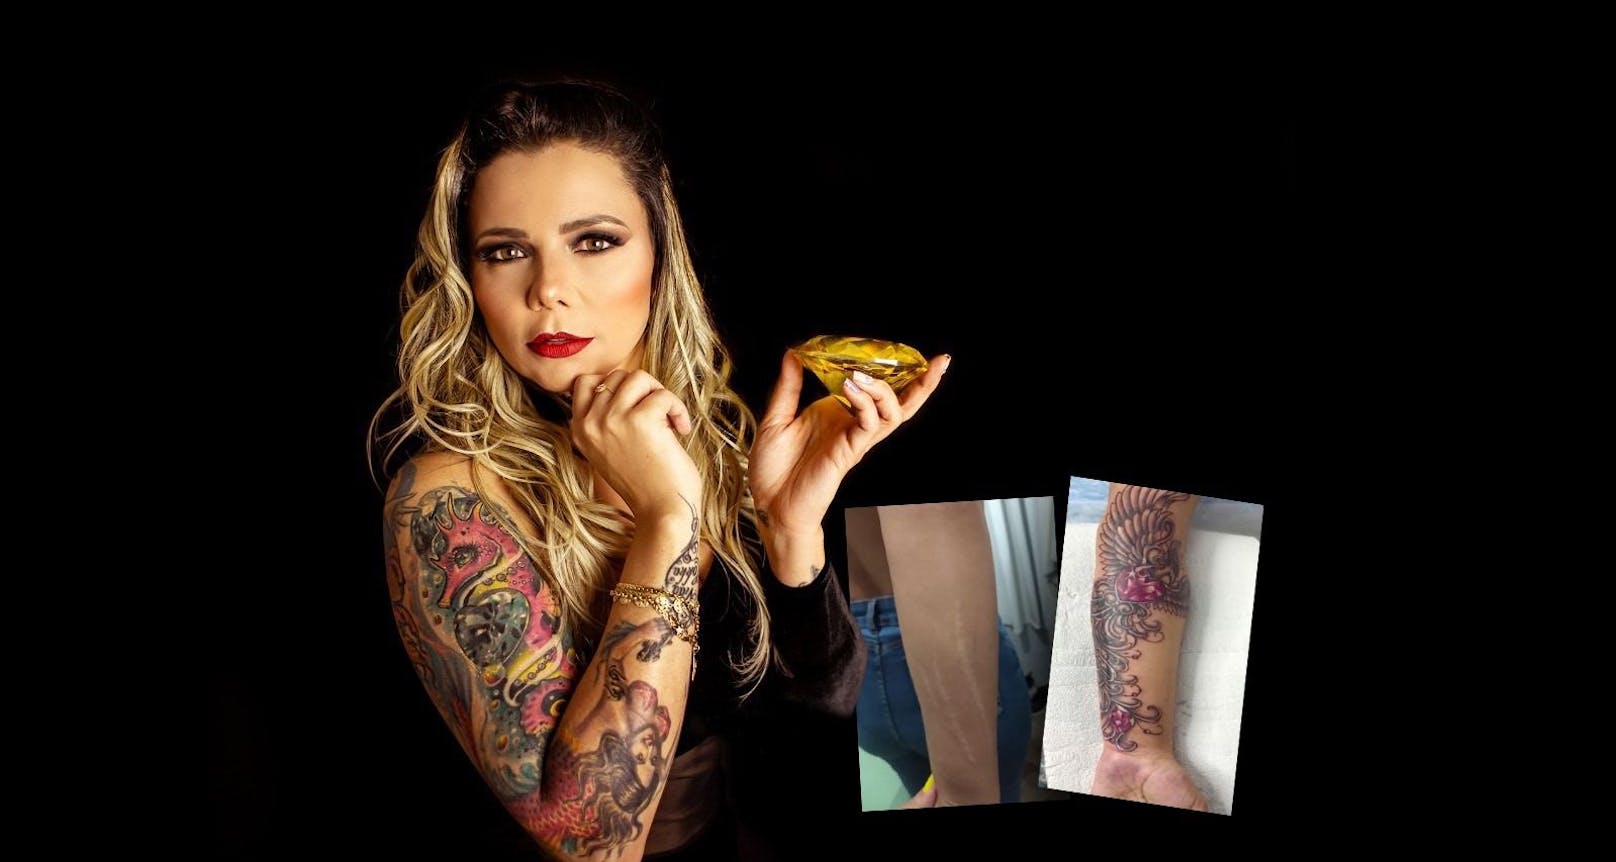 Tattoo-Artist Karlla Mendes überdeckt schlimme Erlebnisse, wie hier bei einem Opfer von häuslicher Gewalt, mit Kunstwerken.